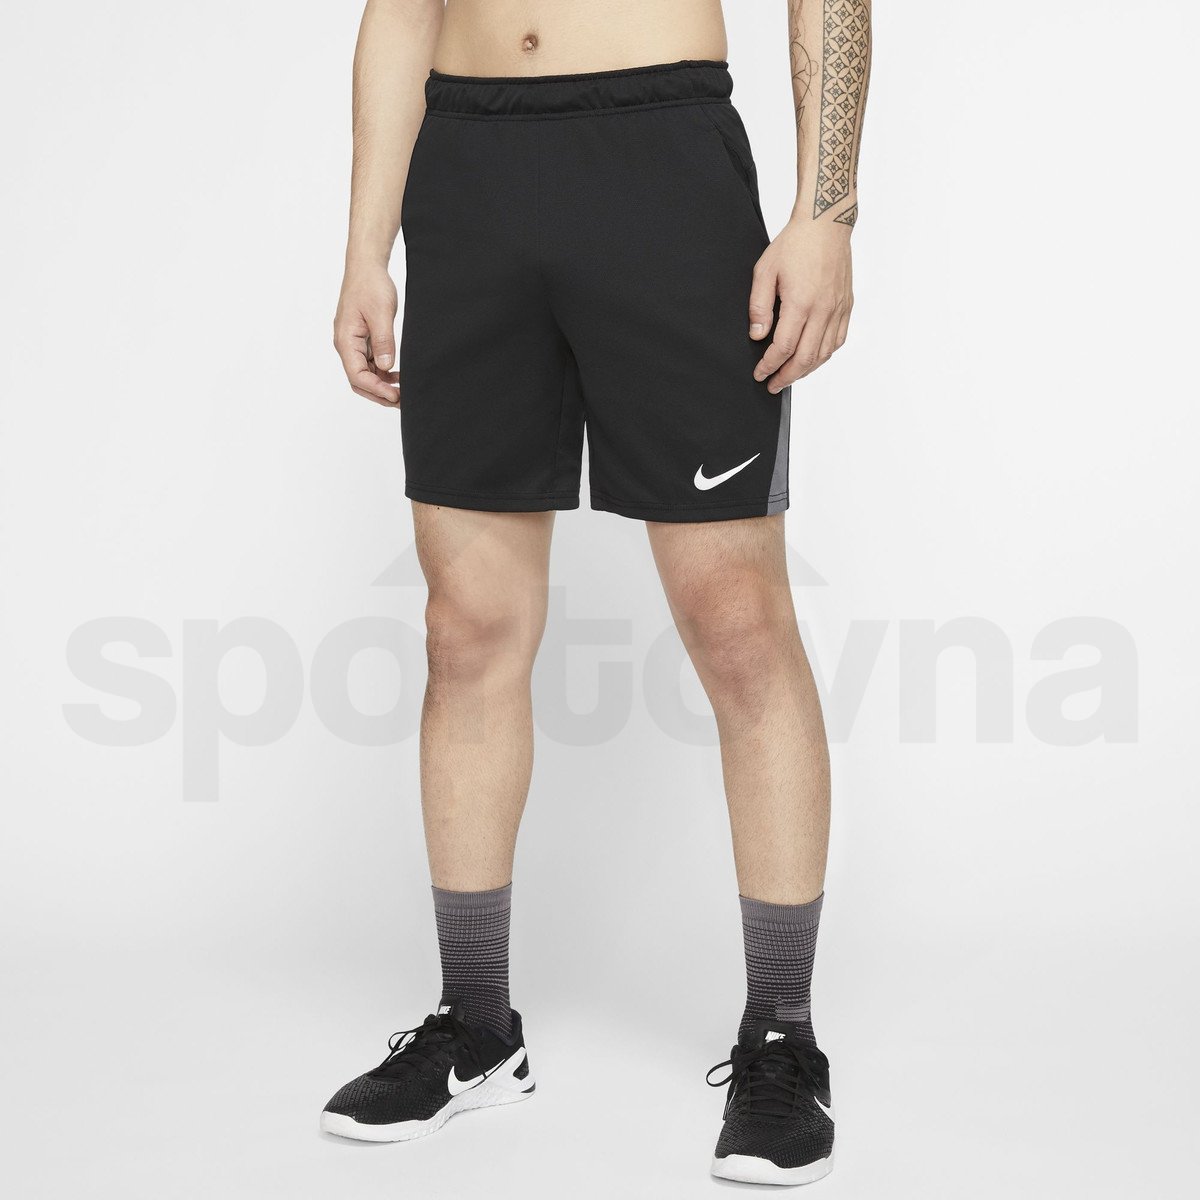 Šortky Nike Dry 5.0 M - černá